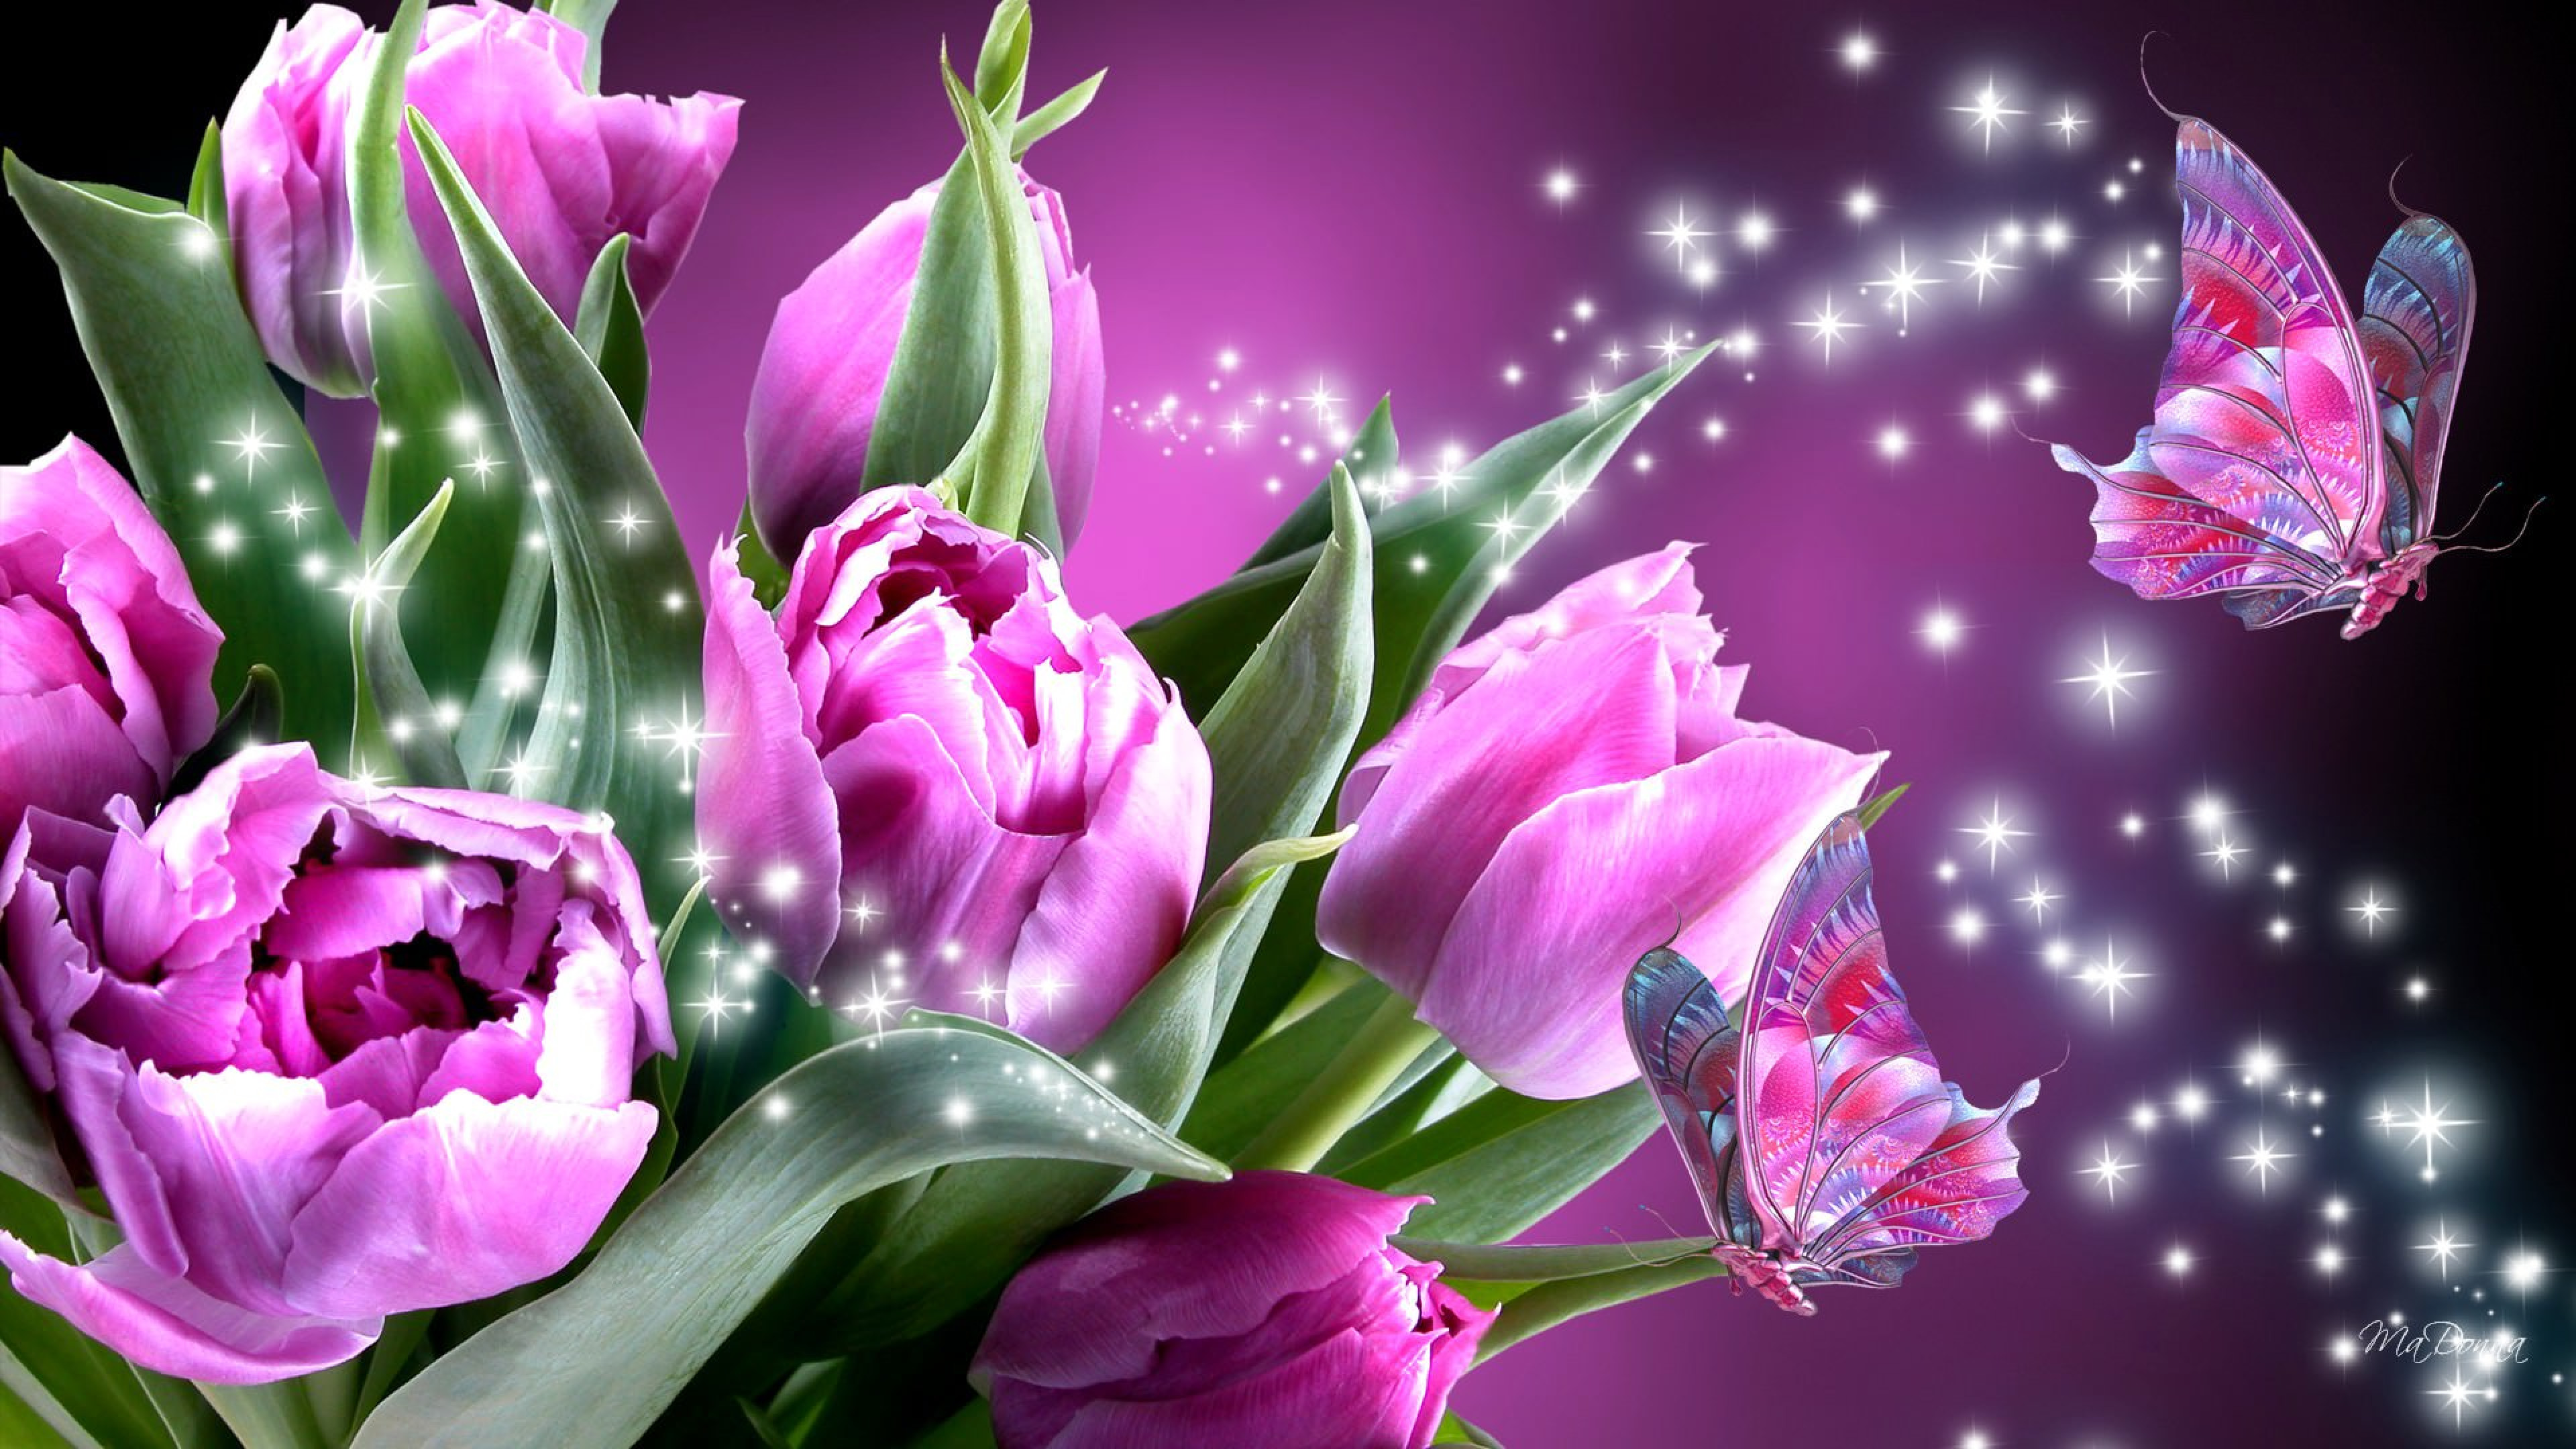 Обои с тюльпанами на телефон. Шикарные тюльпаны. Весенние цветы тюльпаны. Розовые тюльпаны. Цветы на заставку.